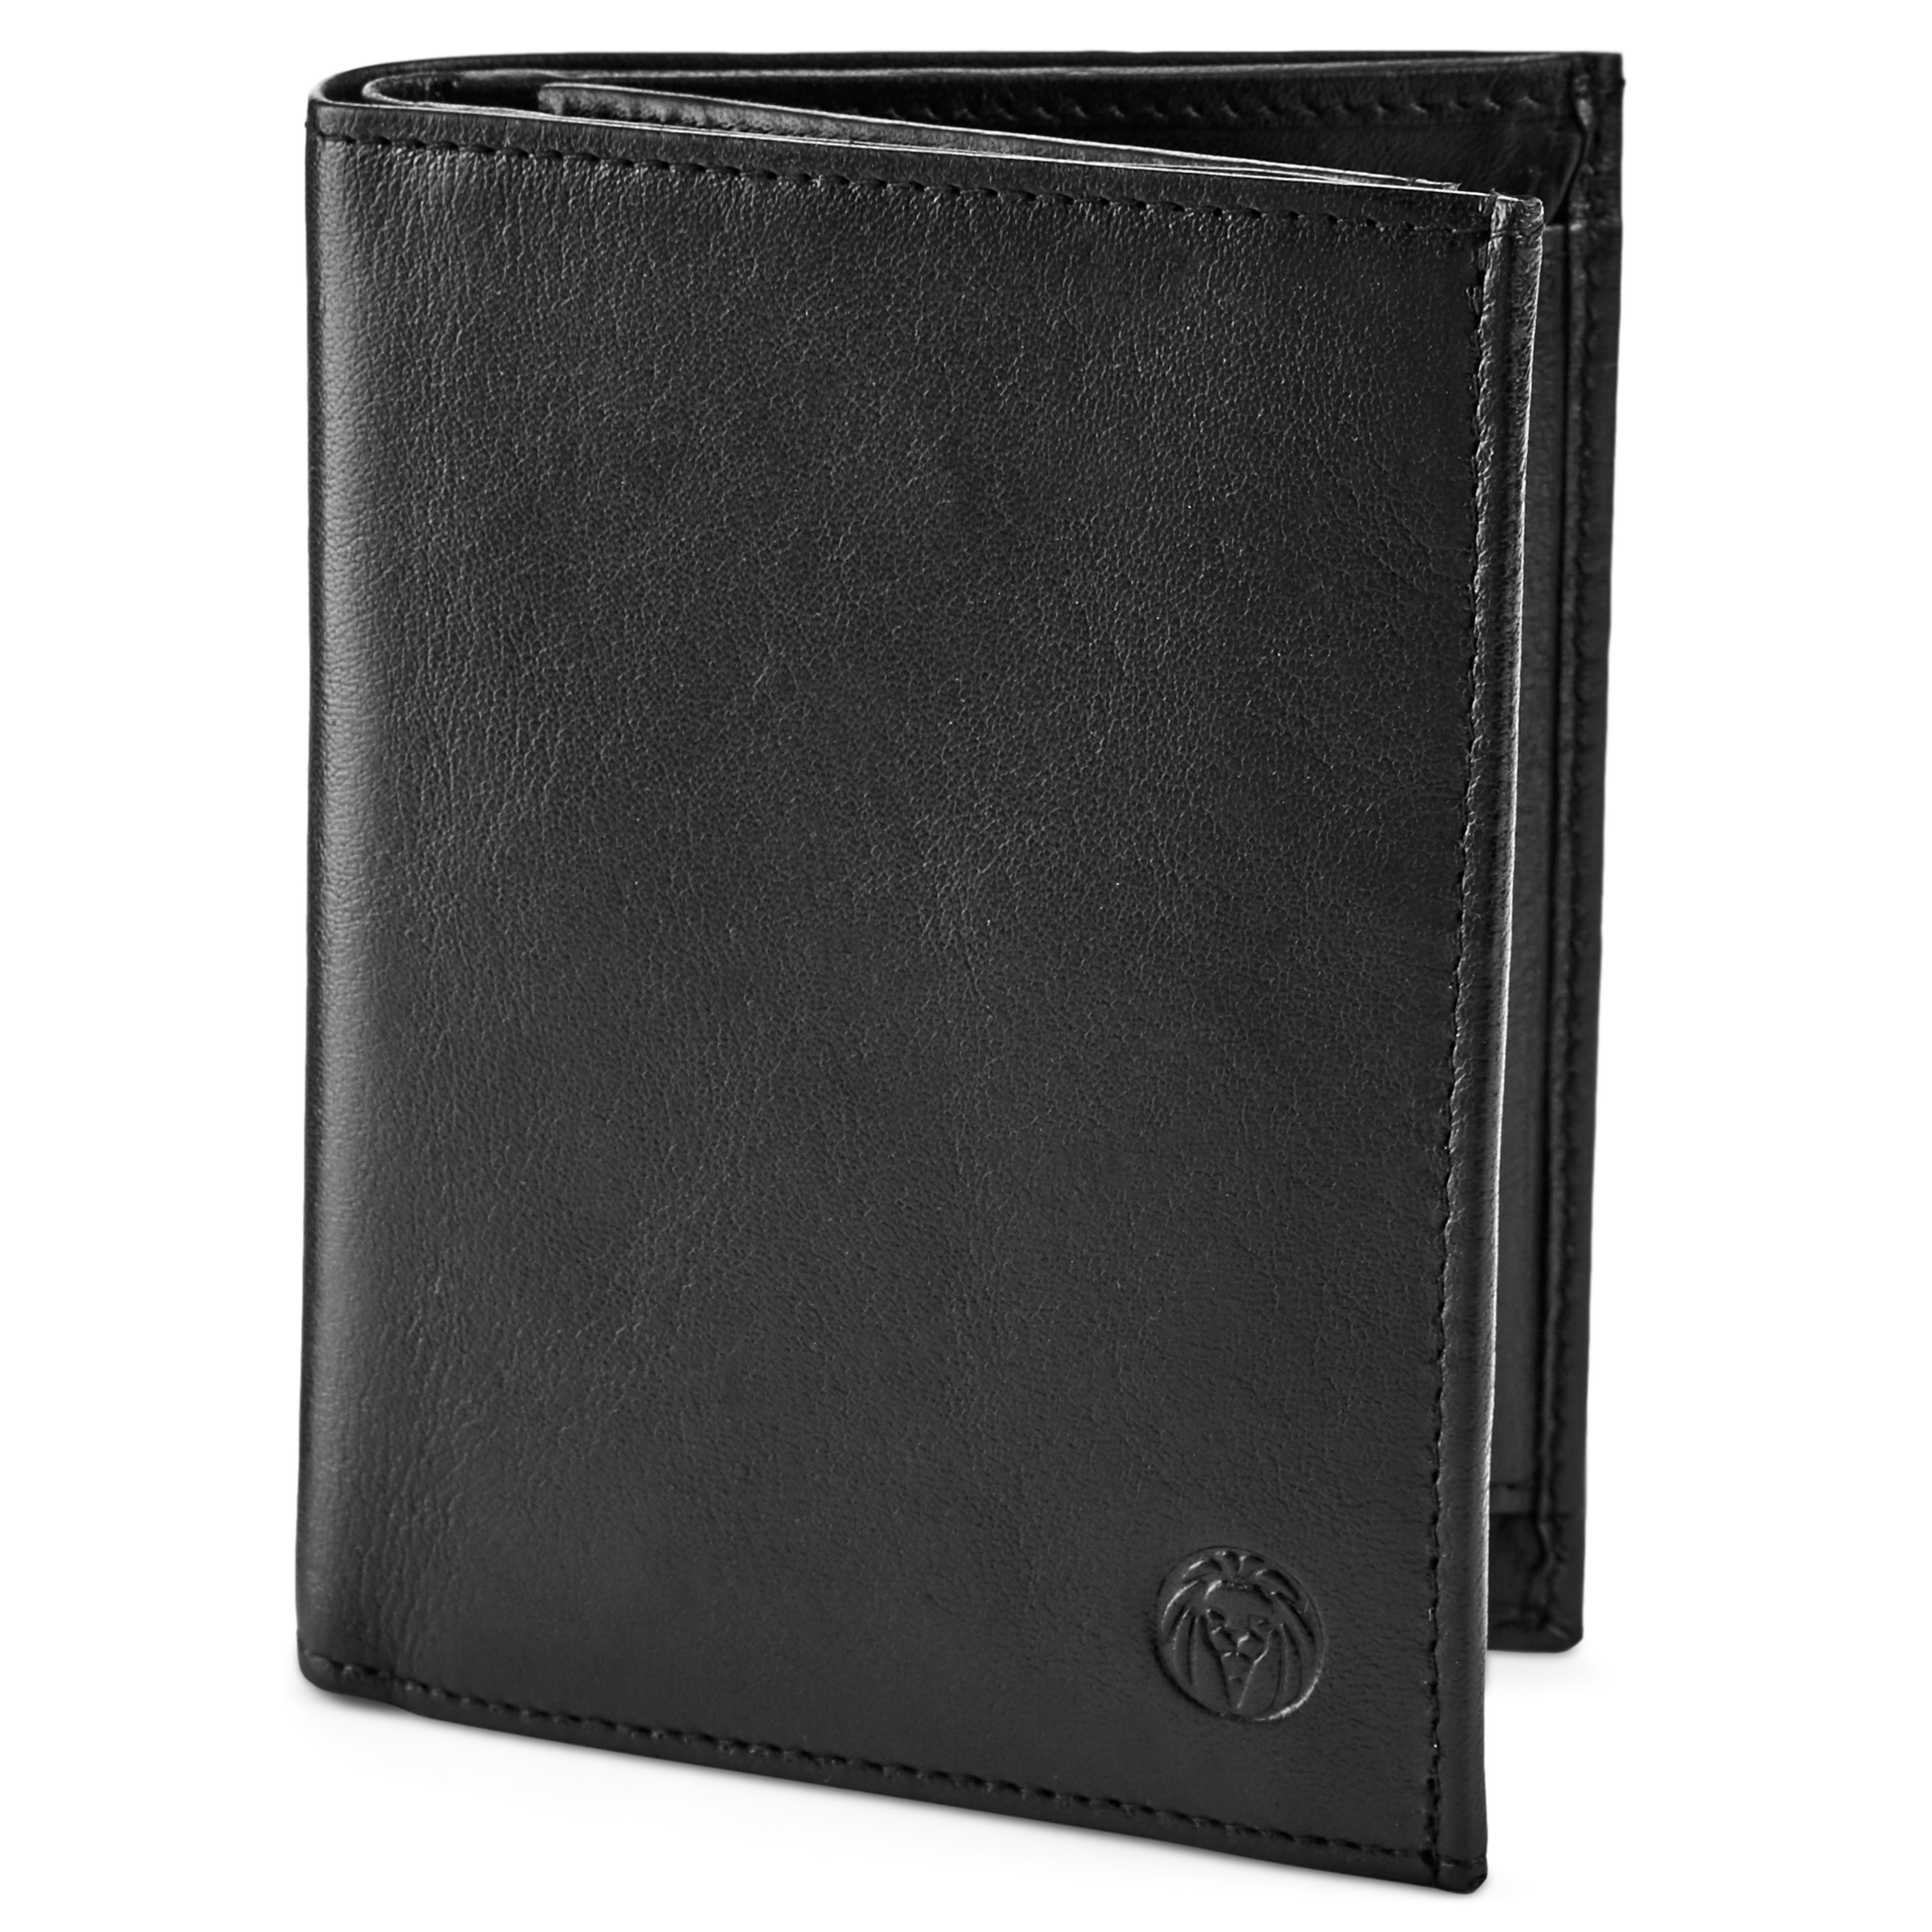 Original Black Leather Wallet